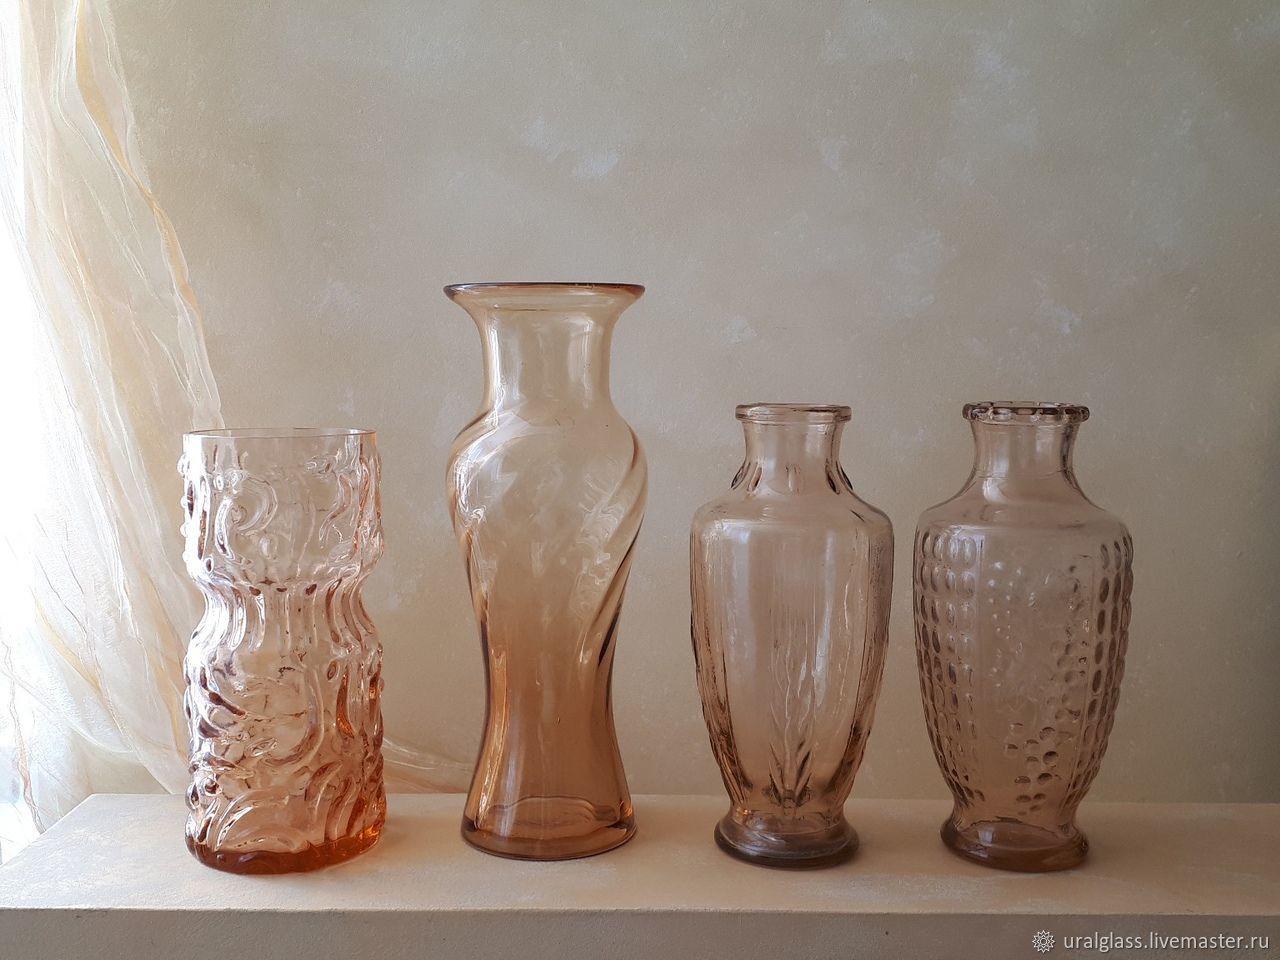 Купить на авито псков вазы. Вазы советского периода. Старинные вазы. Советские вазы для цветов. Советские стеклянные вазы.